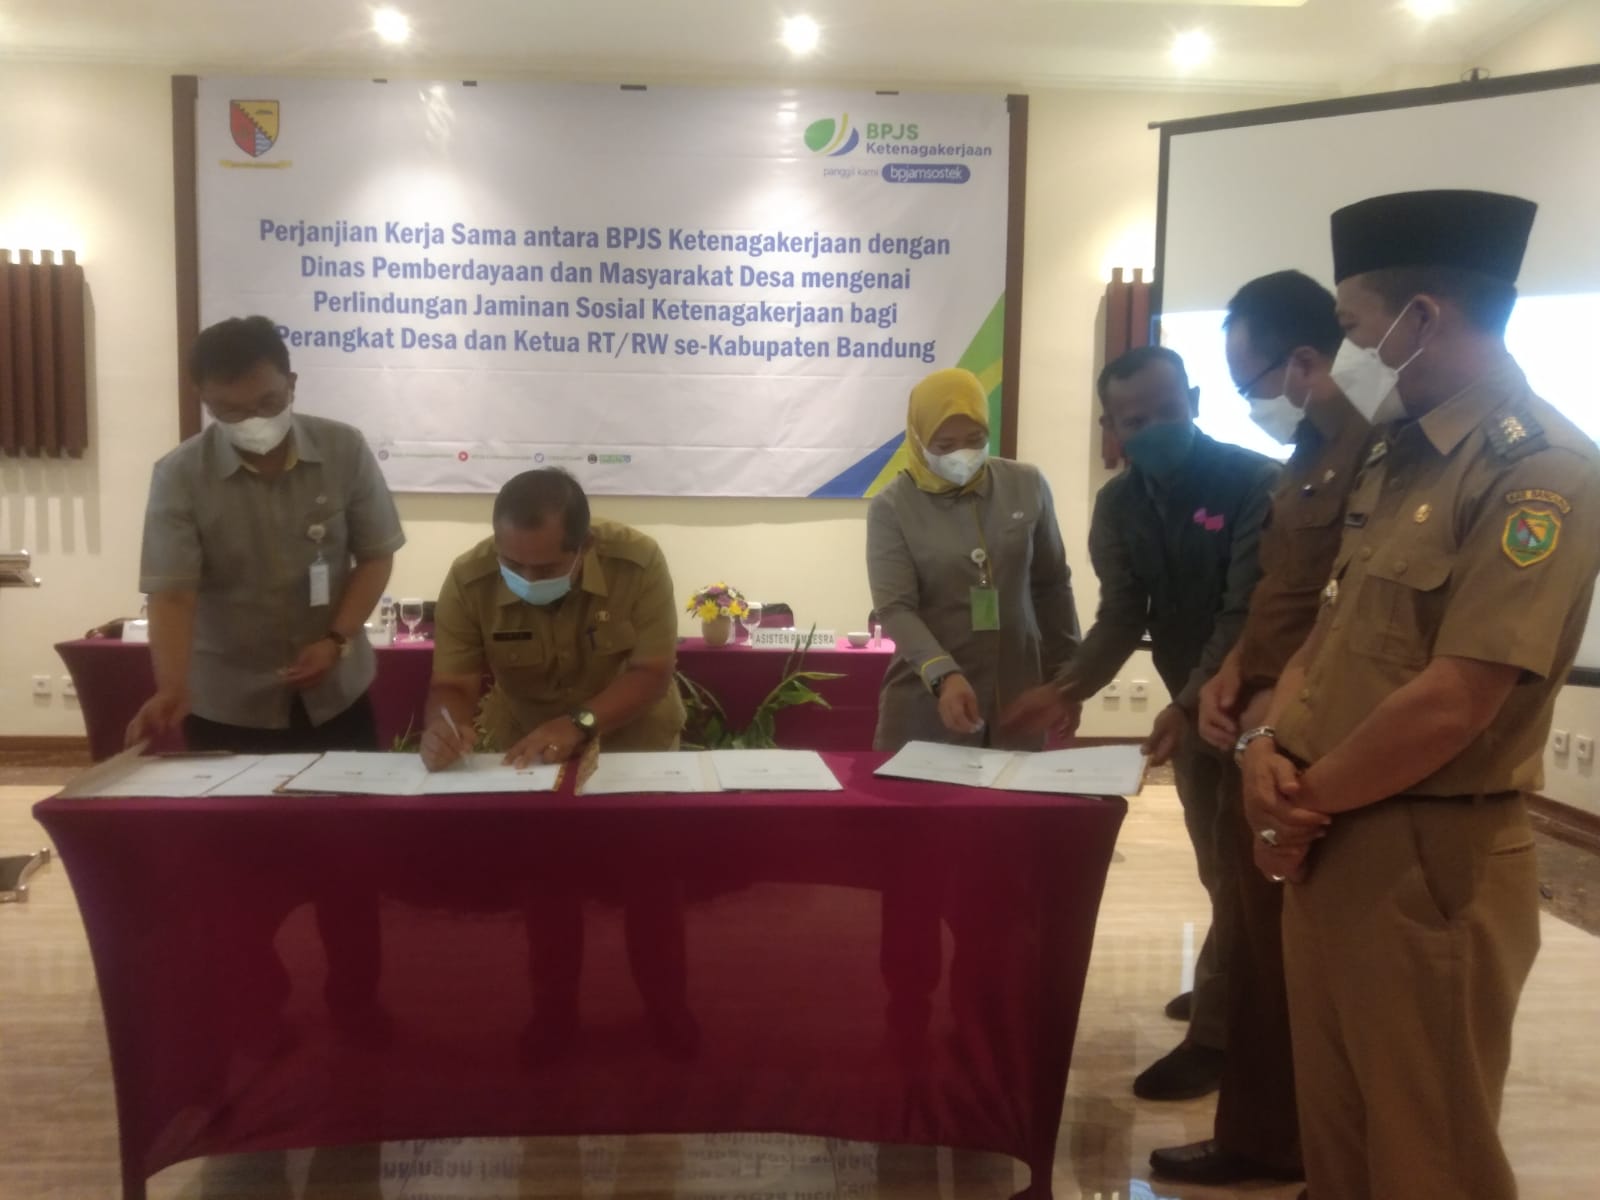 Puluhan Ribu RT-RW se-Kabupaten Bandung Dapat Perlindungan Keselamatan Kerja